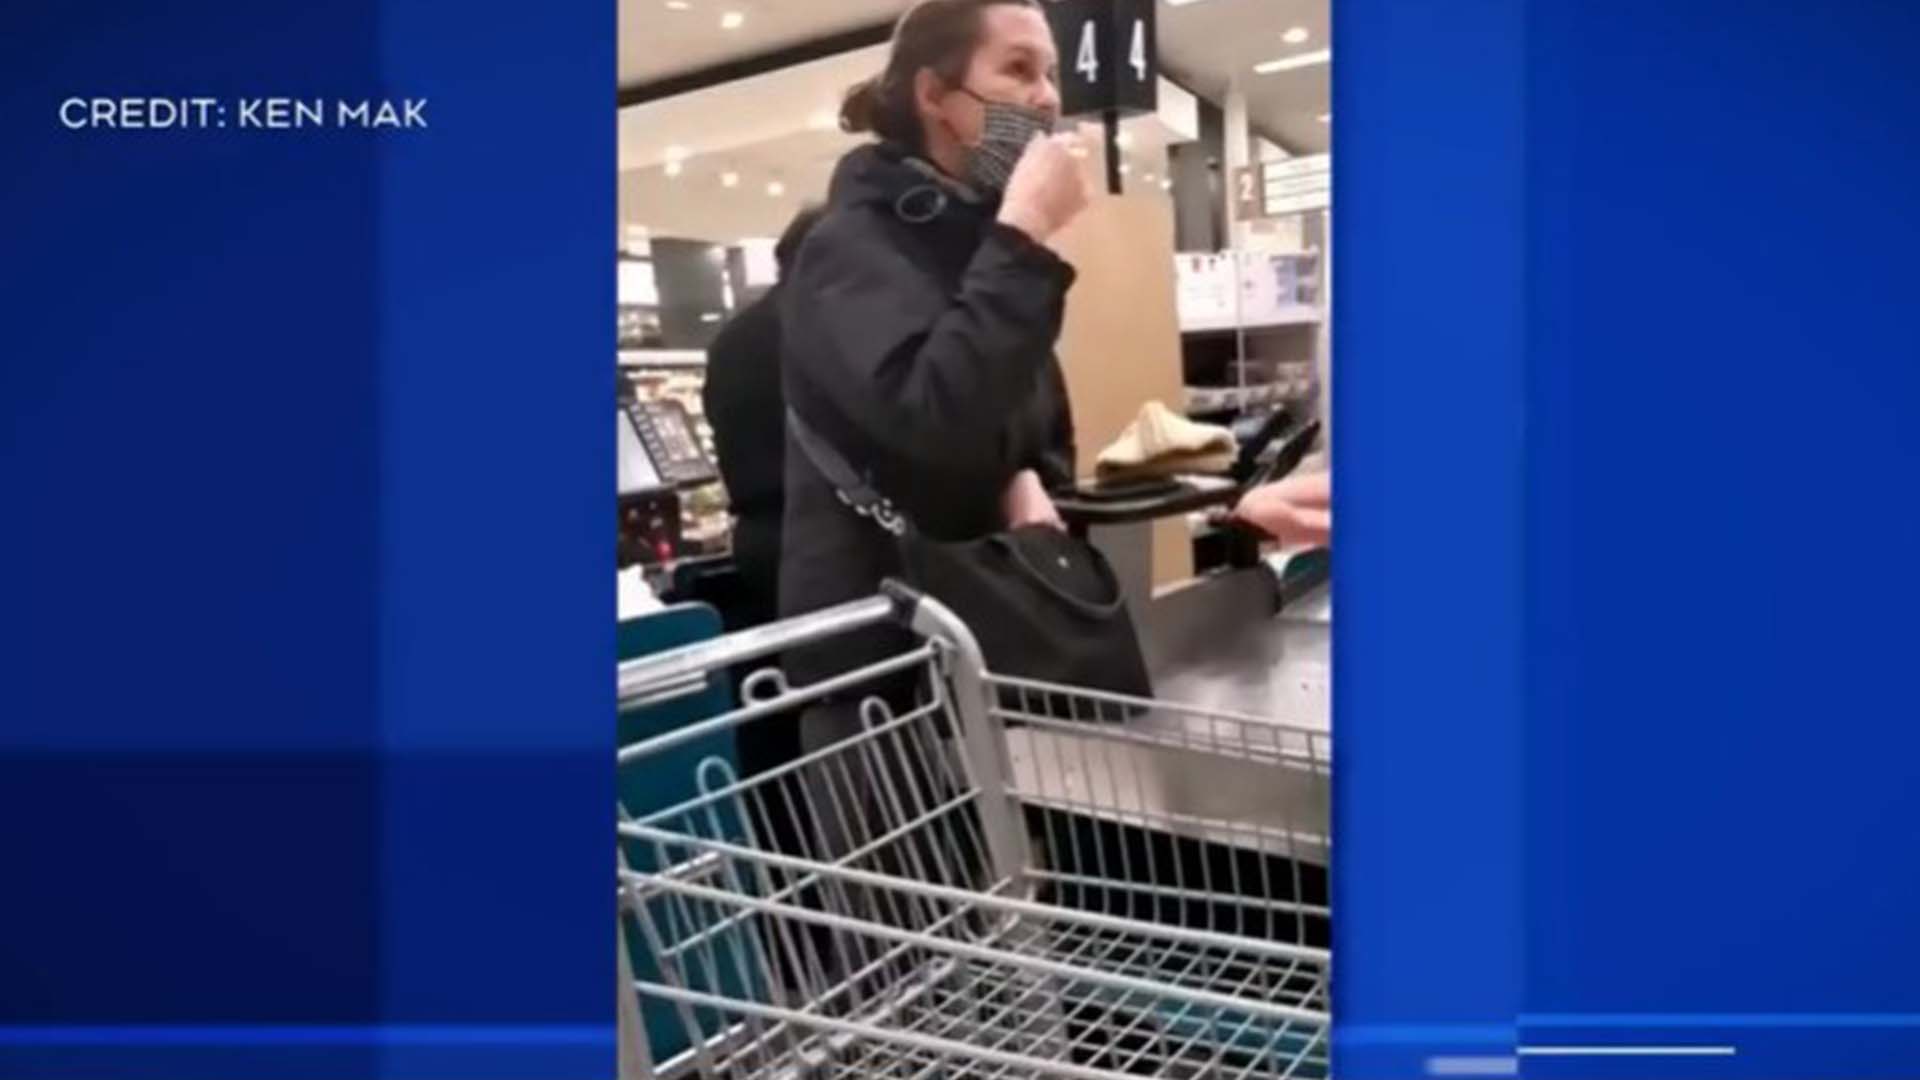 Un Montréalais asiatique partage une vidéo d'une rencontre troublante dans une épicerie.